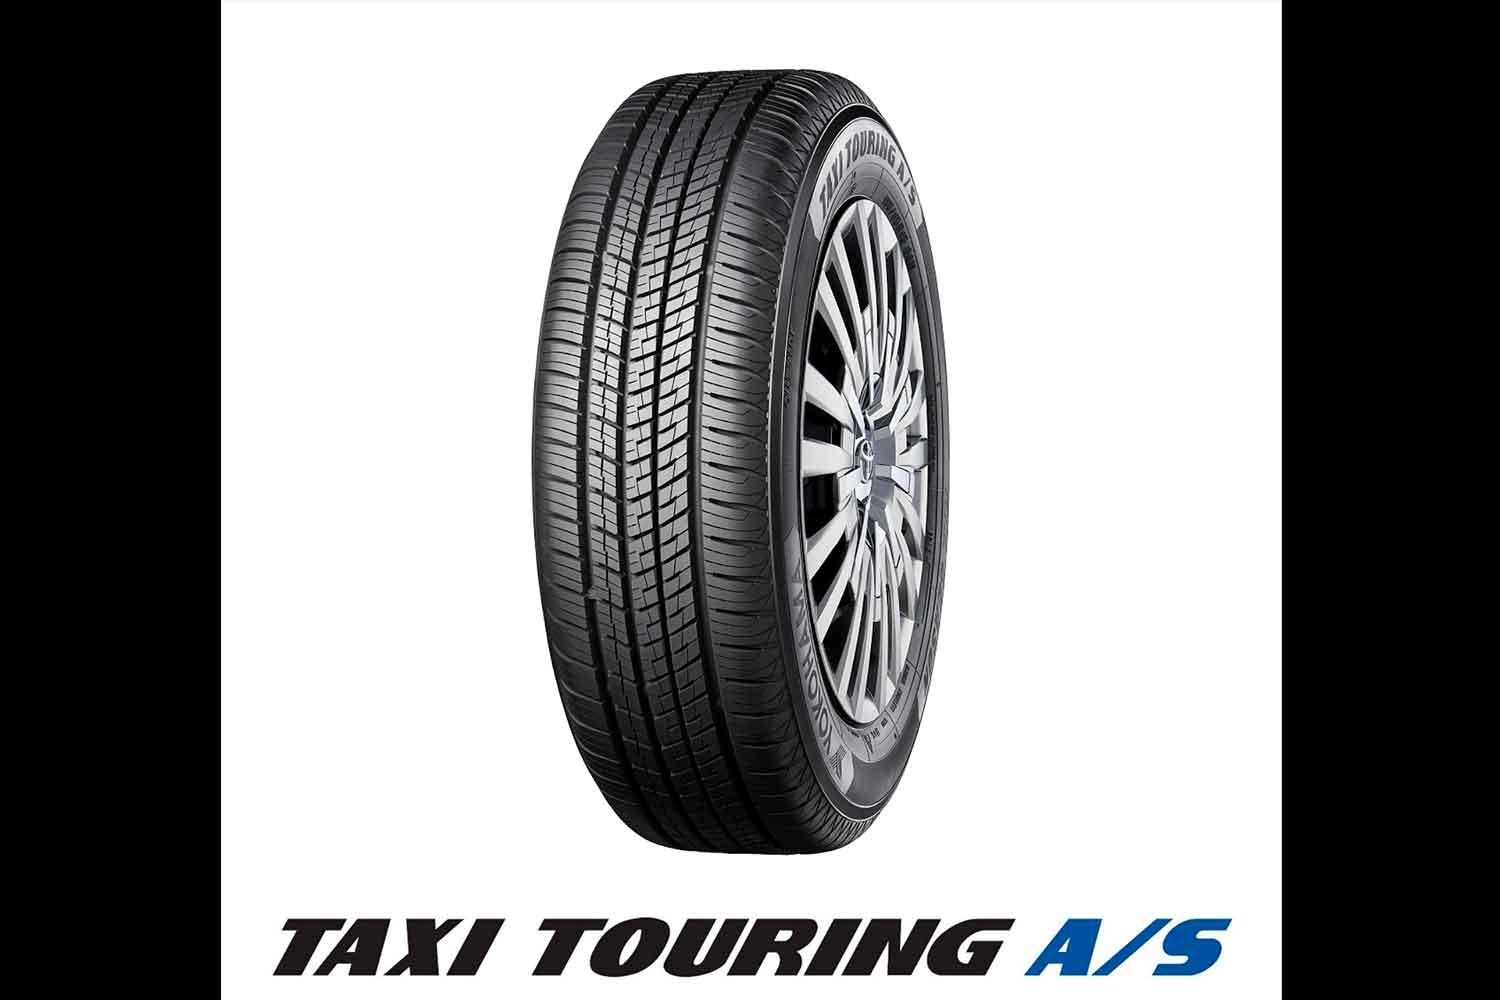 ヨコハマタイヤのタクシー専用オールシーズンタイヤ「TAXI TOURING A/S」